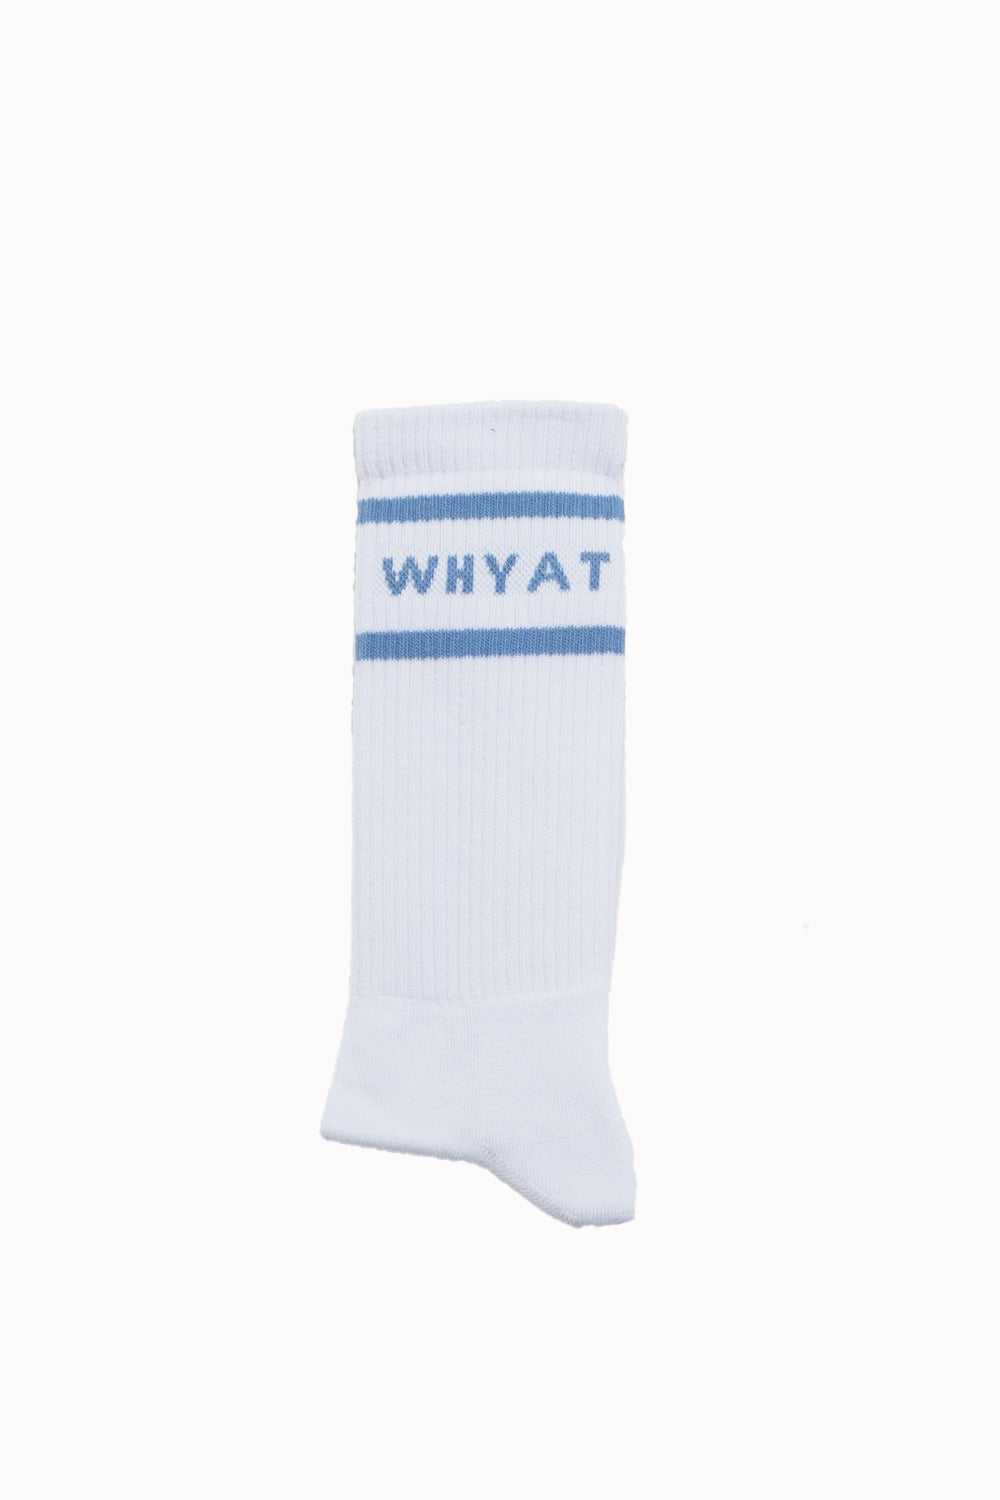 WHYAT BBALL SOCKS -WHITE/BLUE